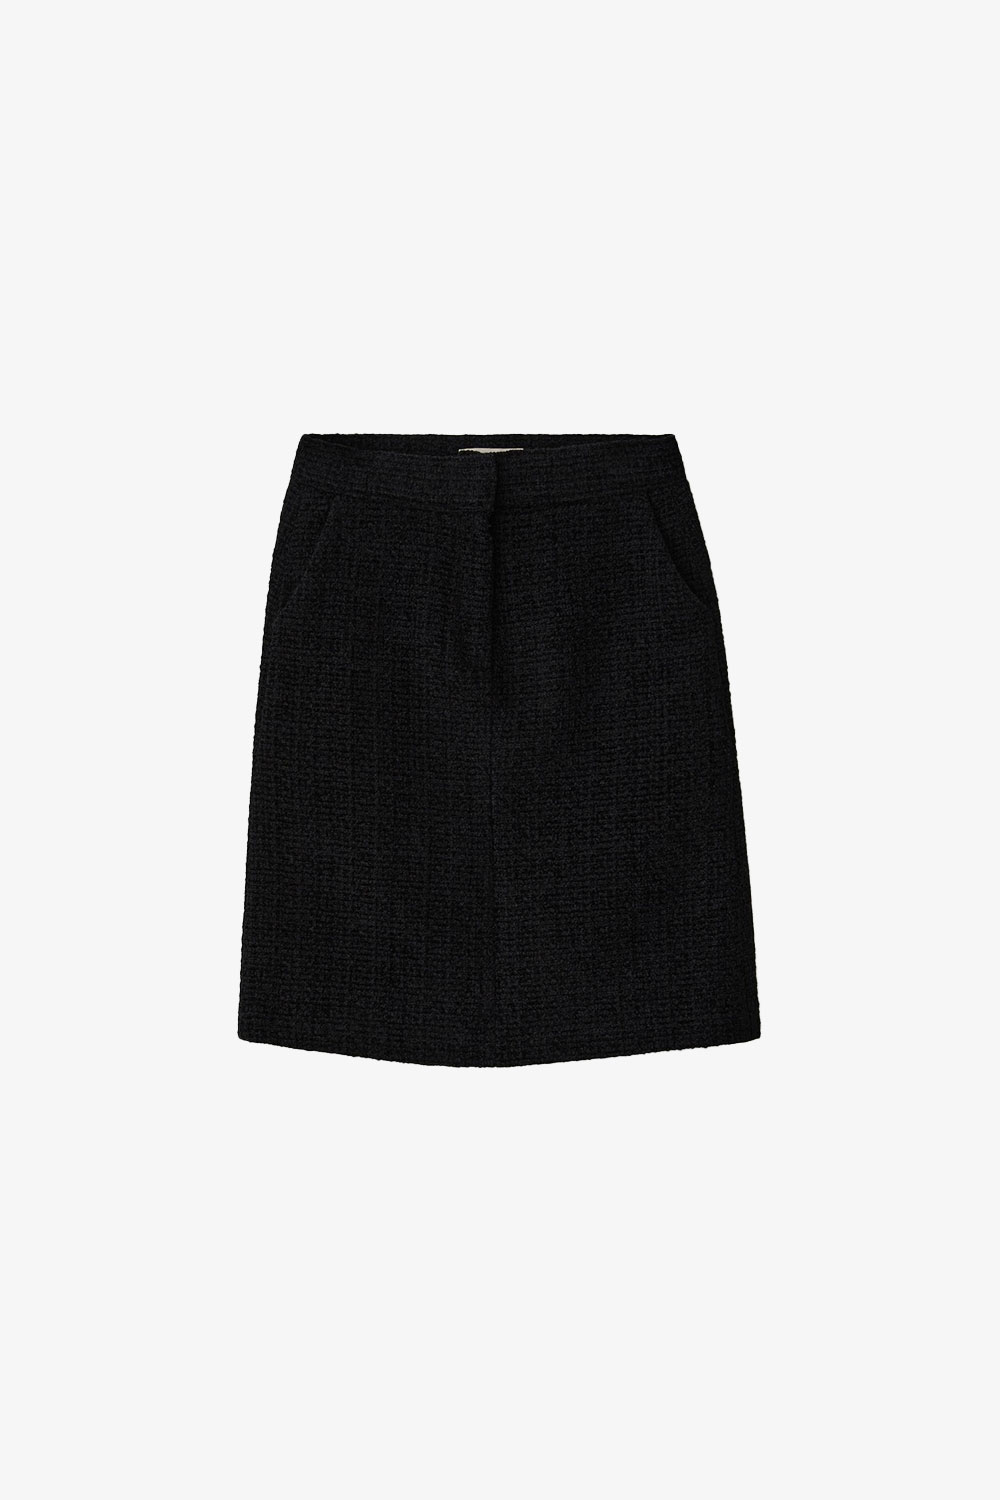 Blanc tweed skirt_black